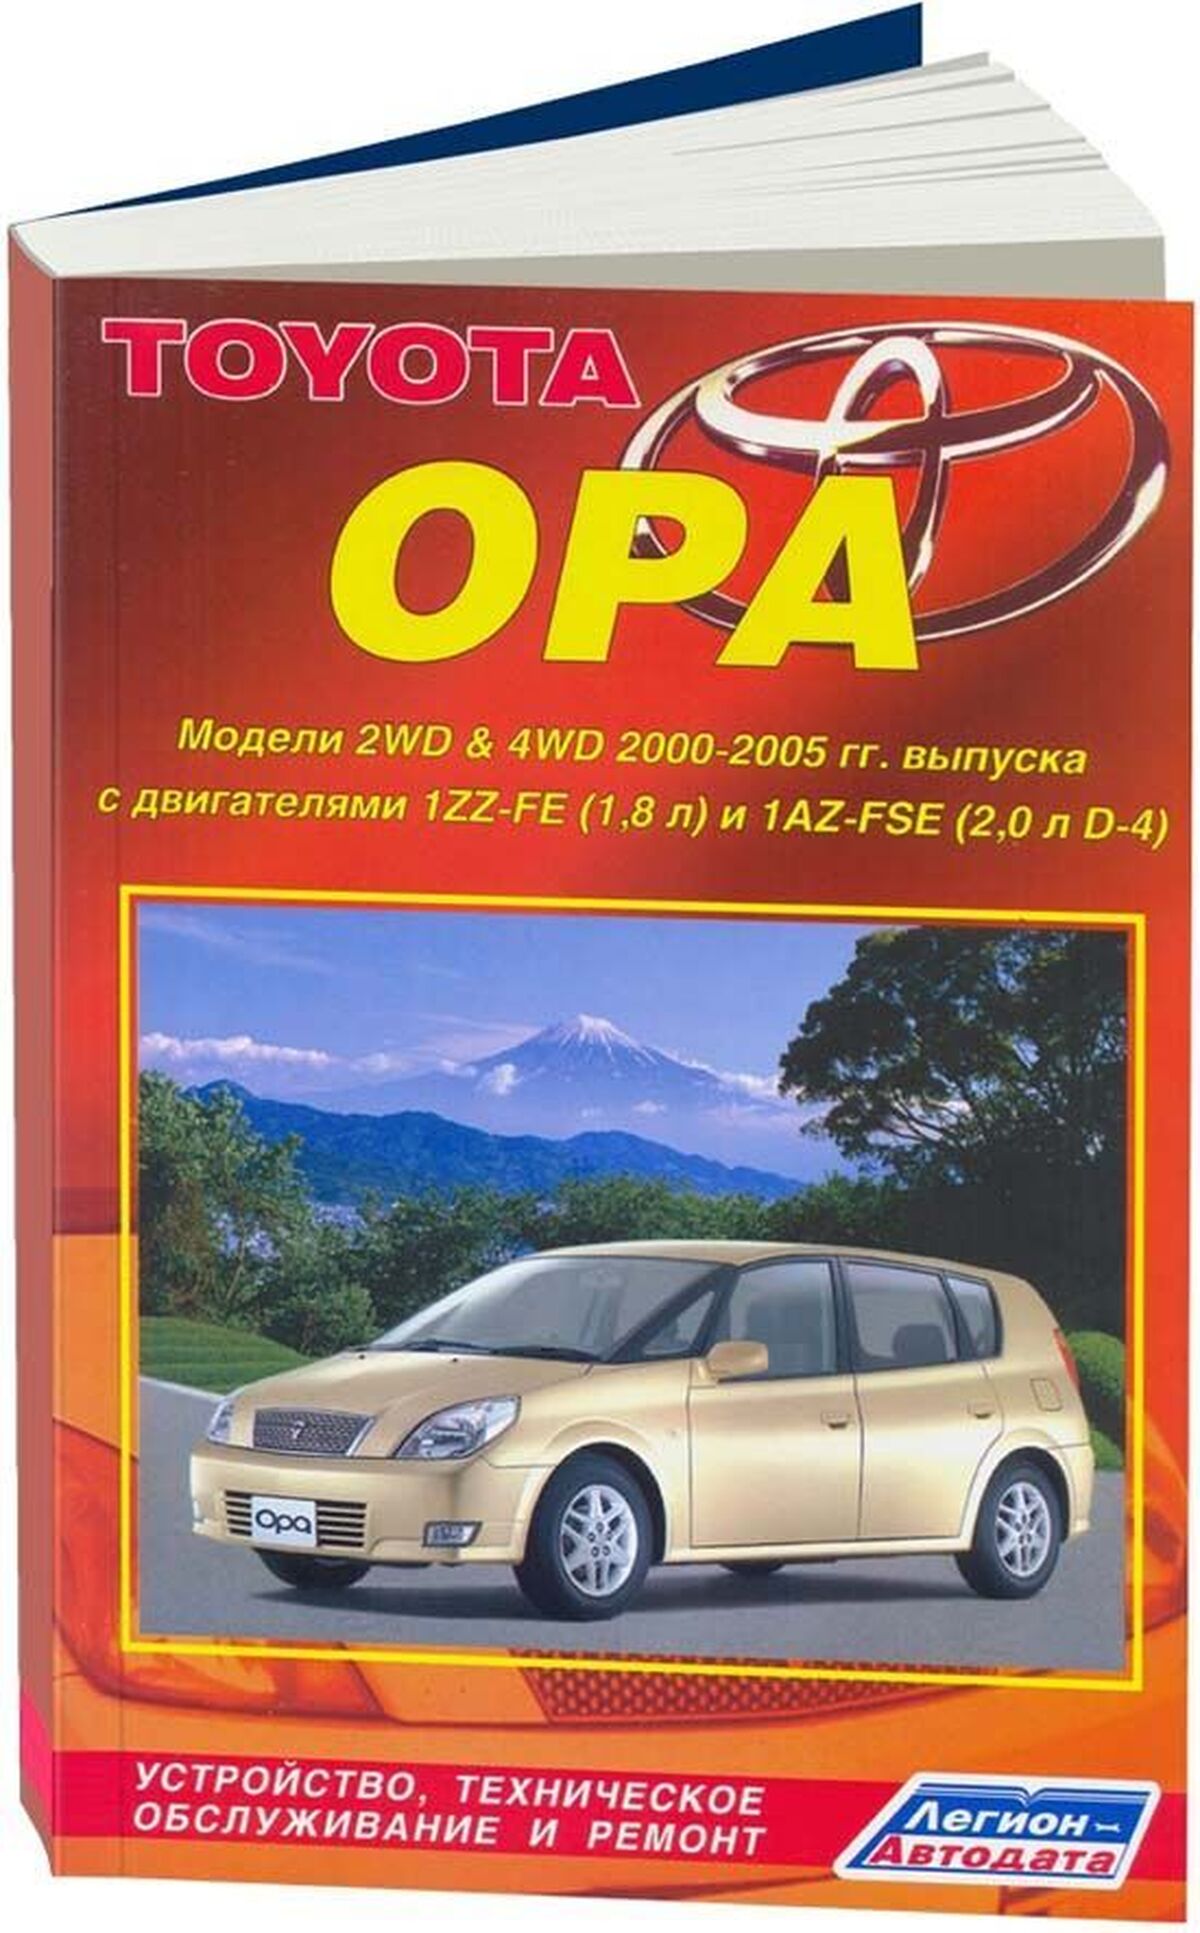 Книга: TOYOTA OPA 2WD и 4WD (б) 2000-2005 г.в., рем., экспл., то | Легион-Aвтодата